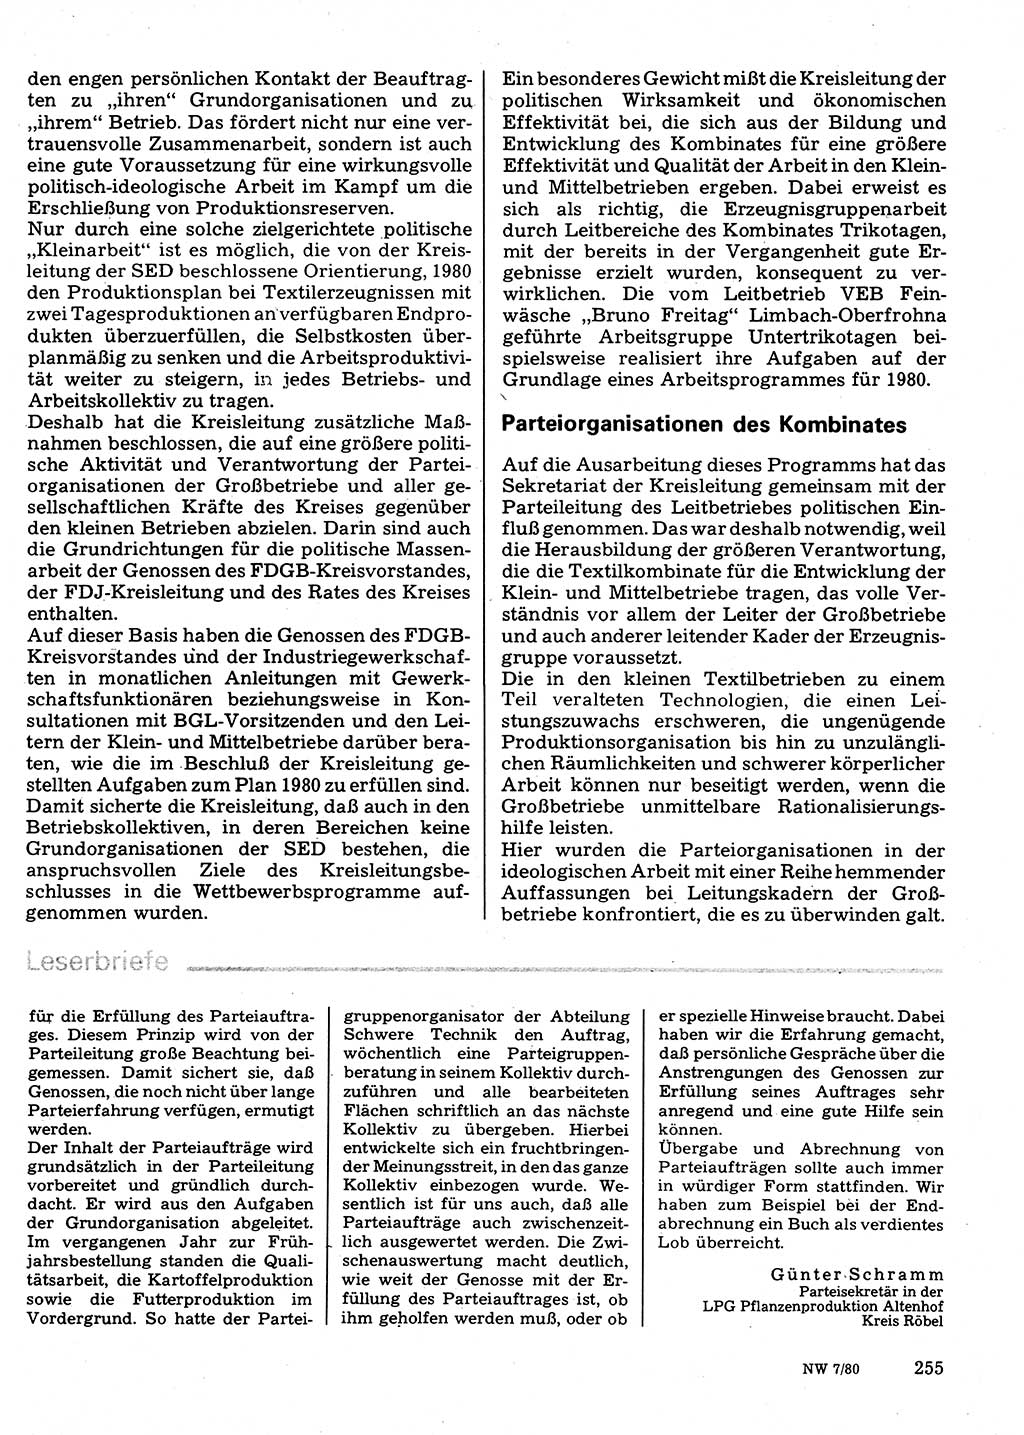 Neuer Weg (NW), Organ des Zentralkomitees (ZK) der SED (Sozialistische Einheitspartei Deutschlands) für Fragen des Parteilebens, 35. Jahrgang [Deutsche Demokratische Republik (DDR)] 1980, Seite 255 (NW ZK SED DDR 1980, S. 255)